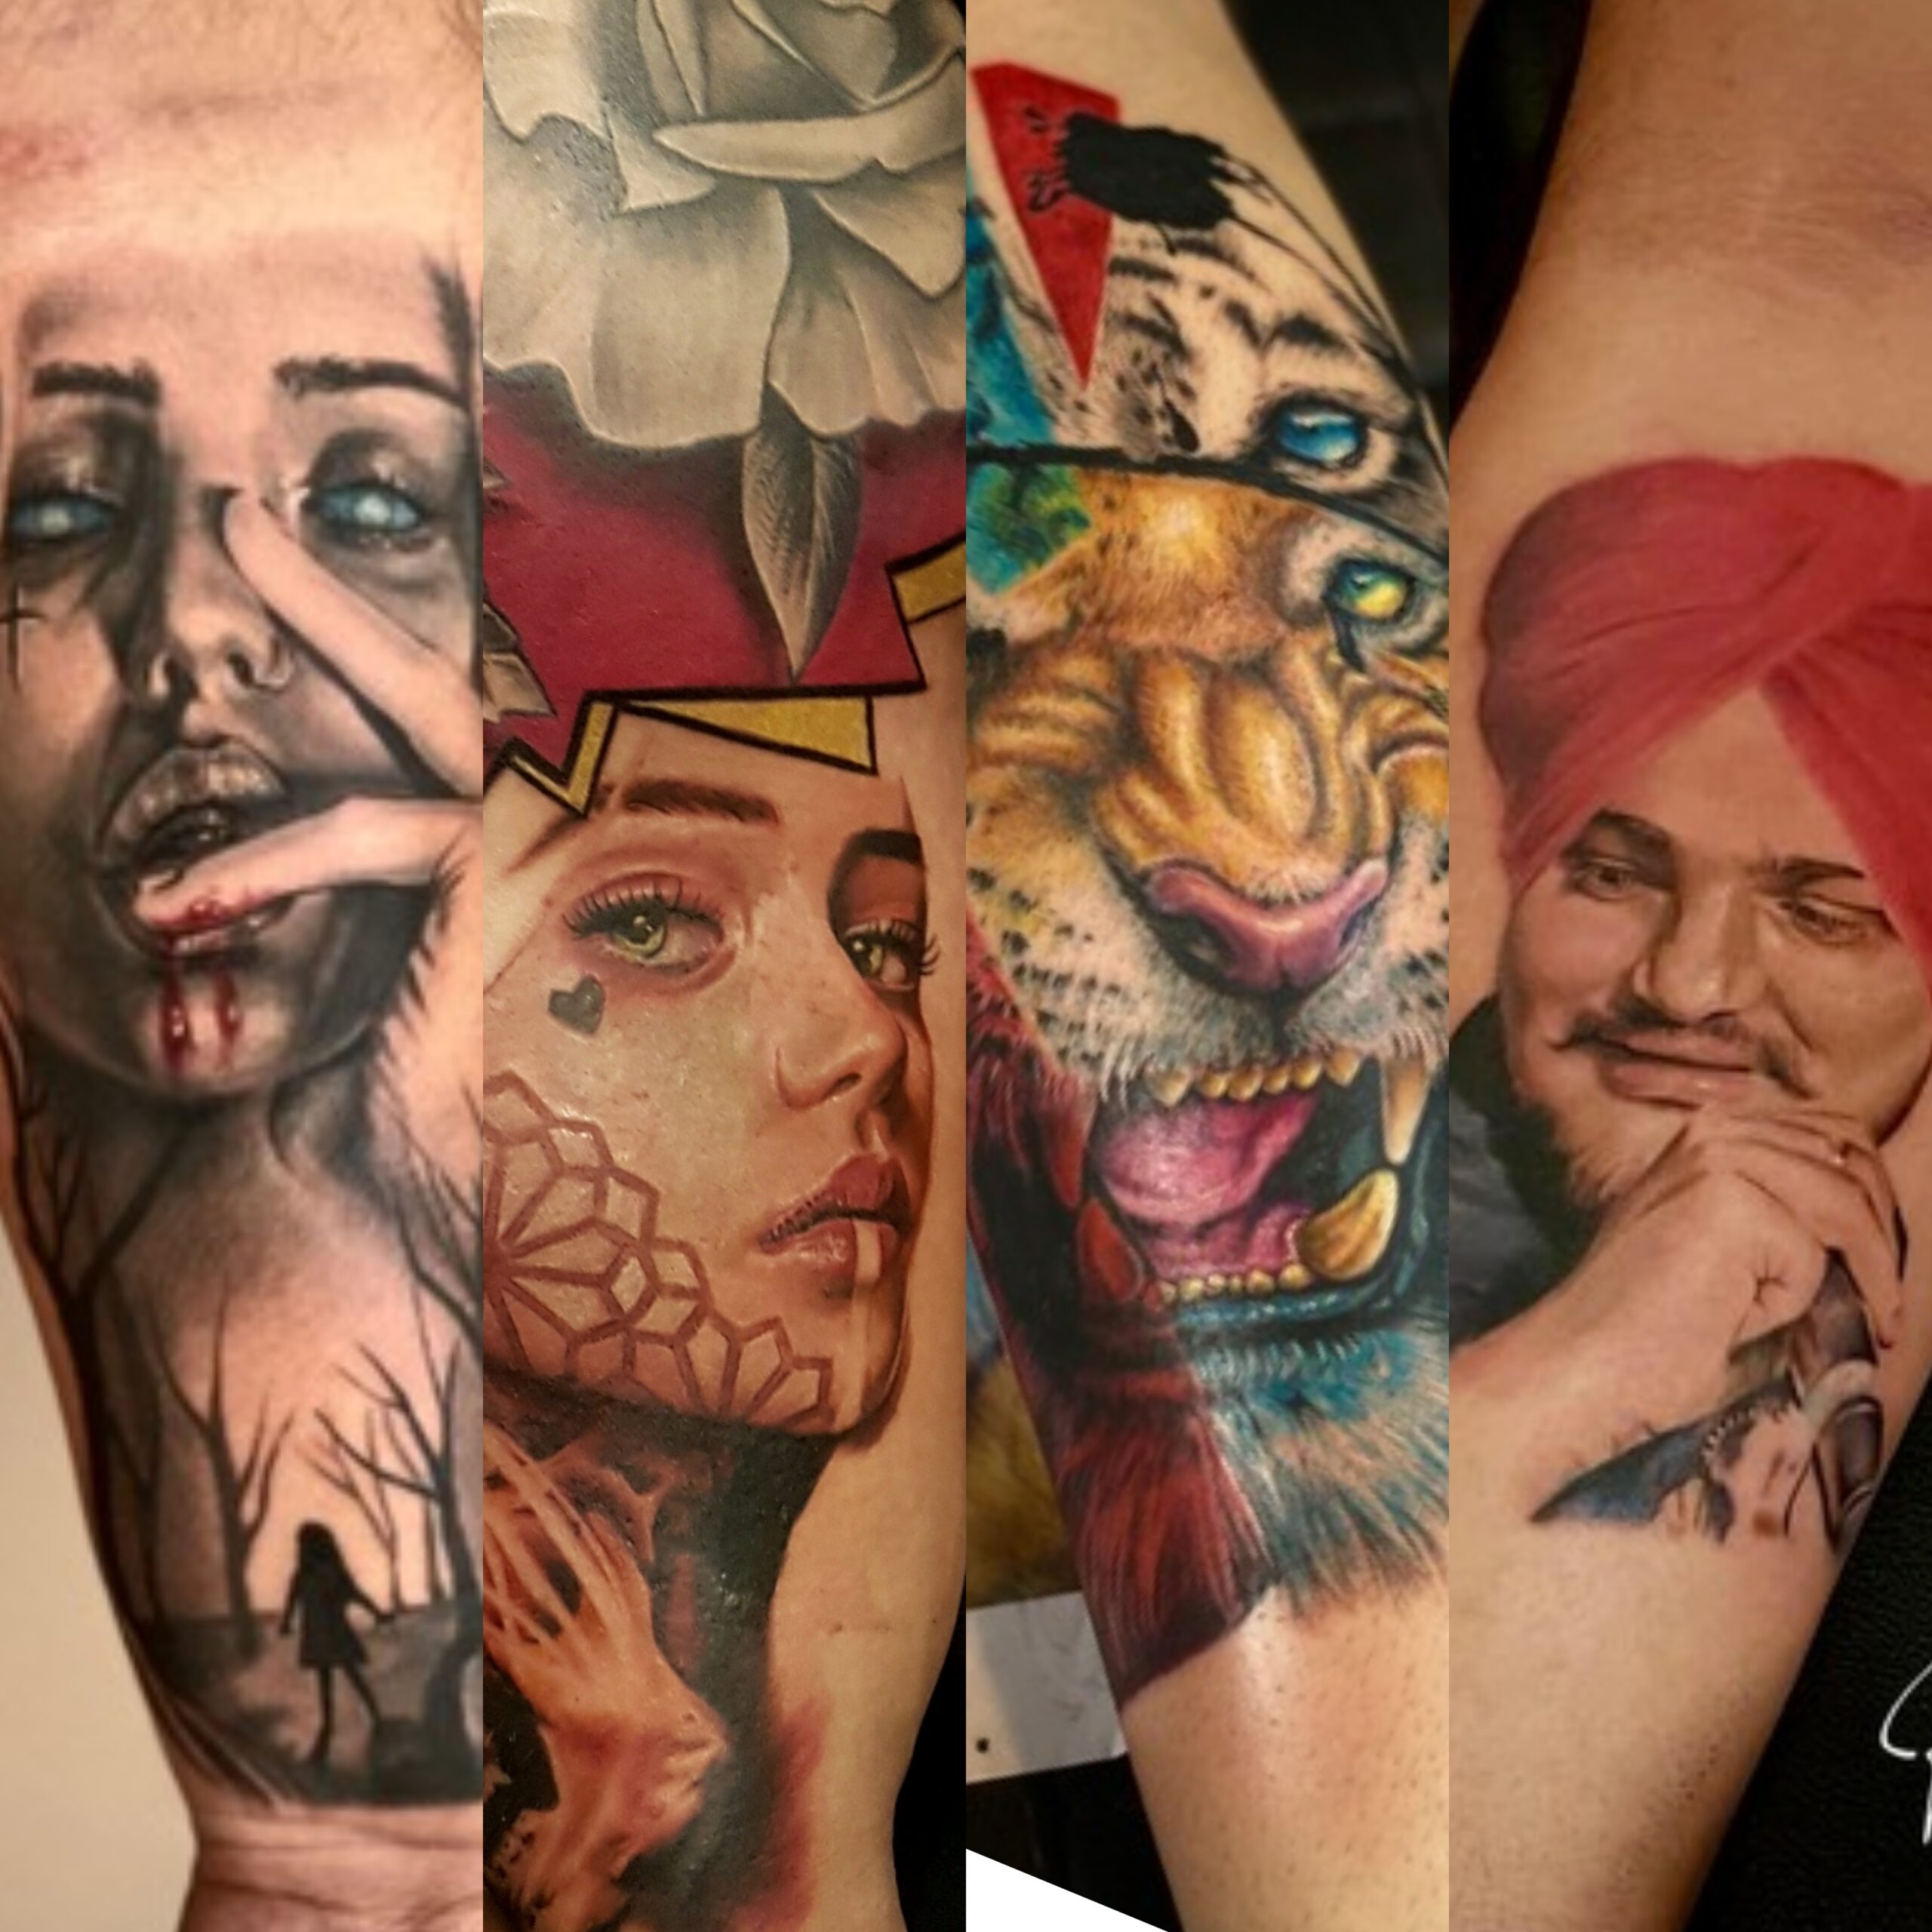 Tattoo Removal at Delhi Laser Clinic